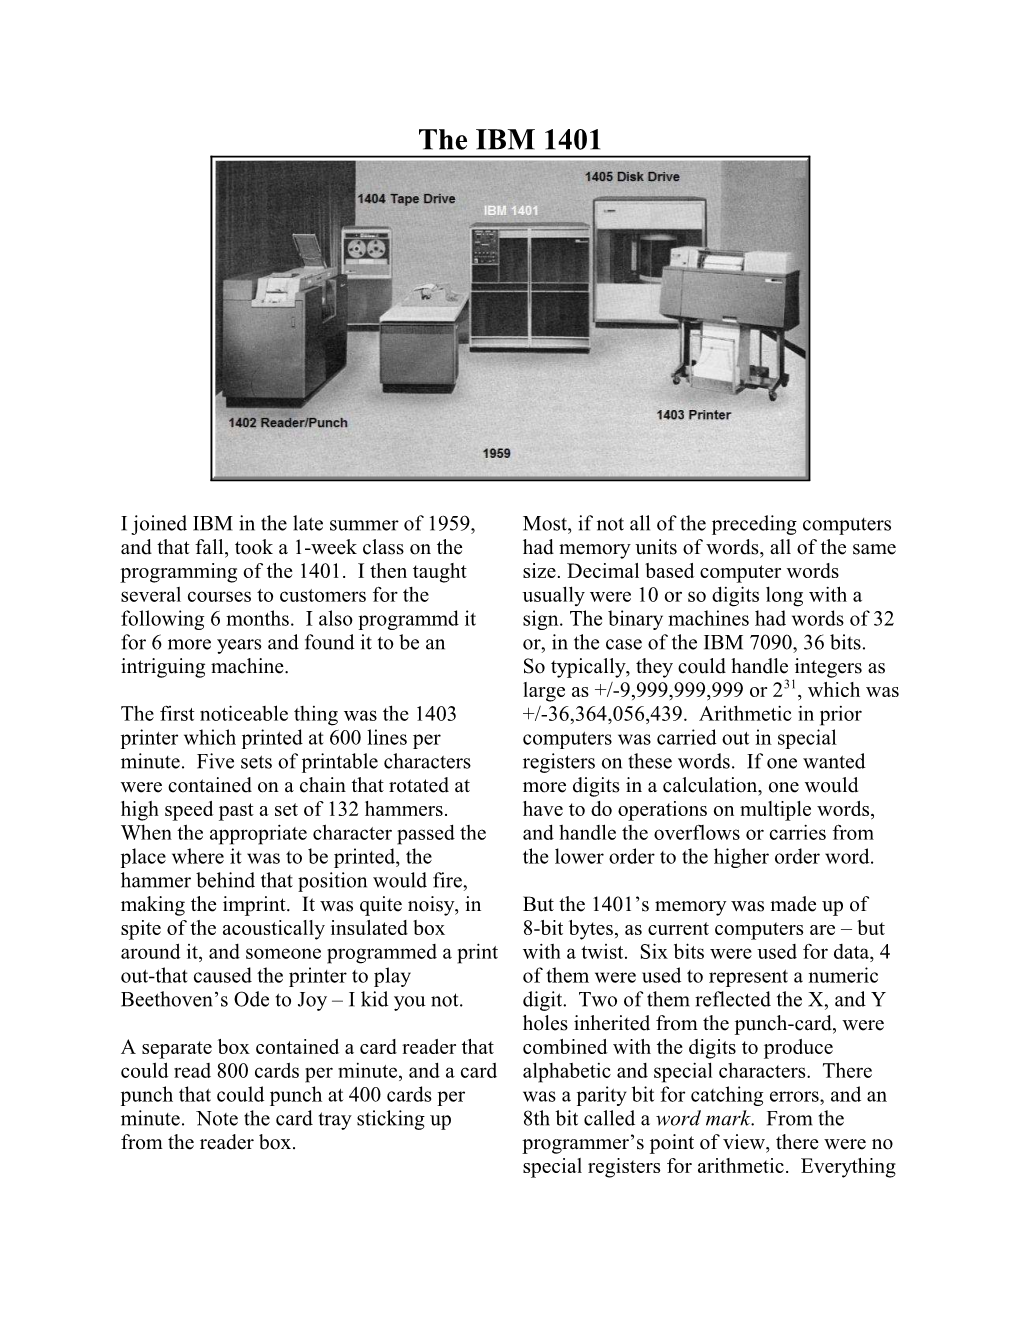 C:\Users\Owner\Desktop\Stories\The IBM 1401.Wpd